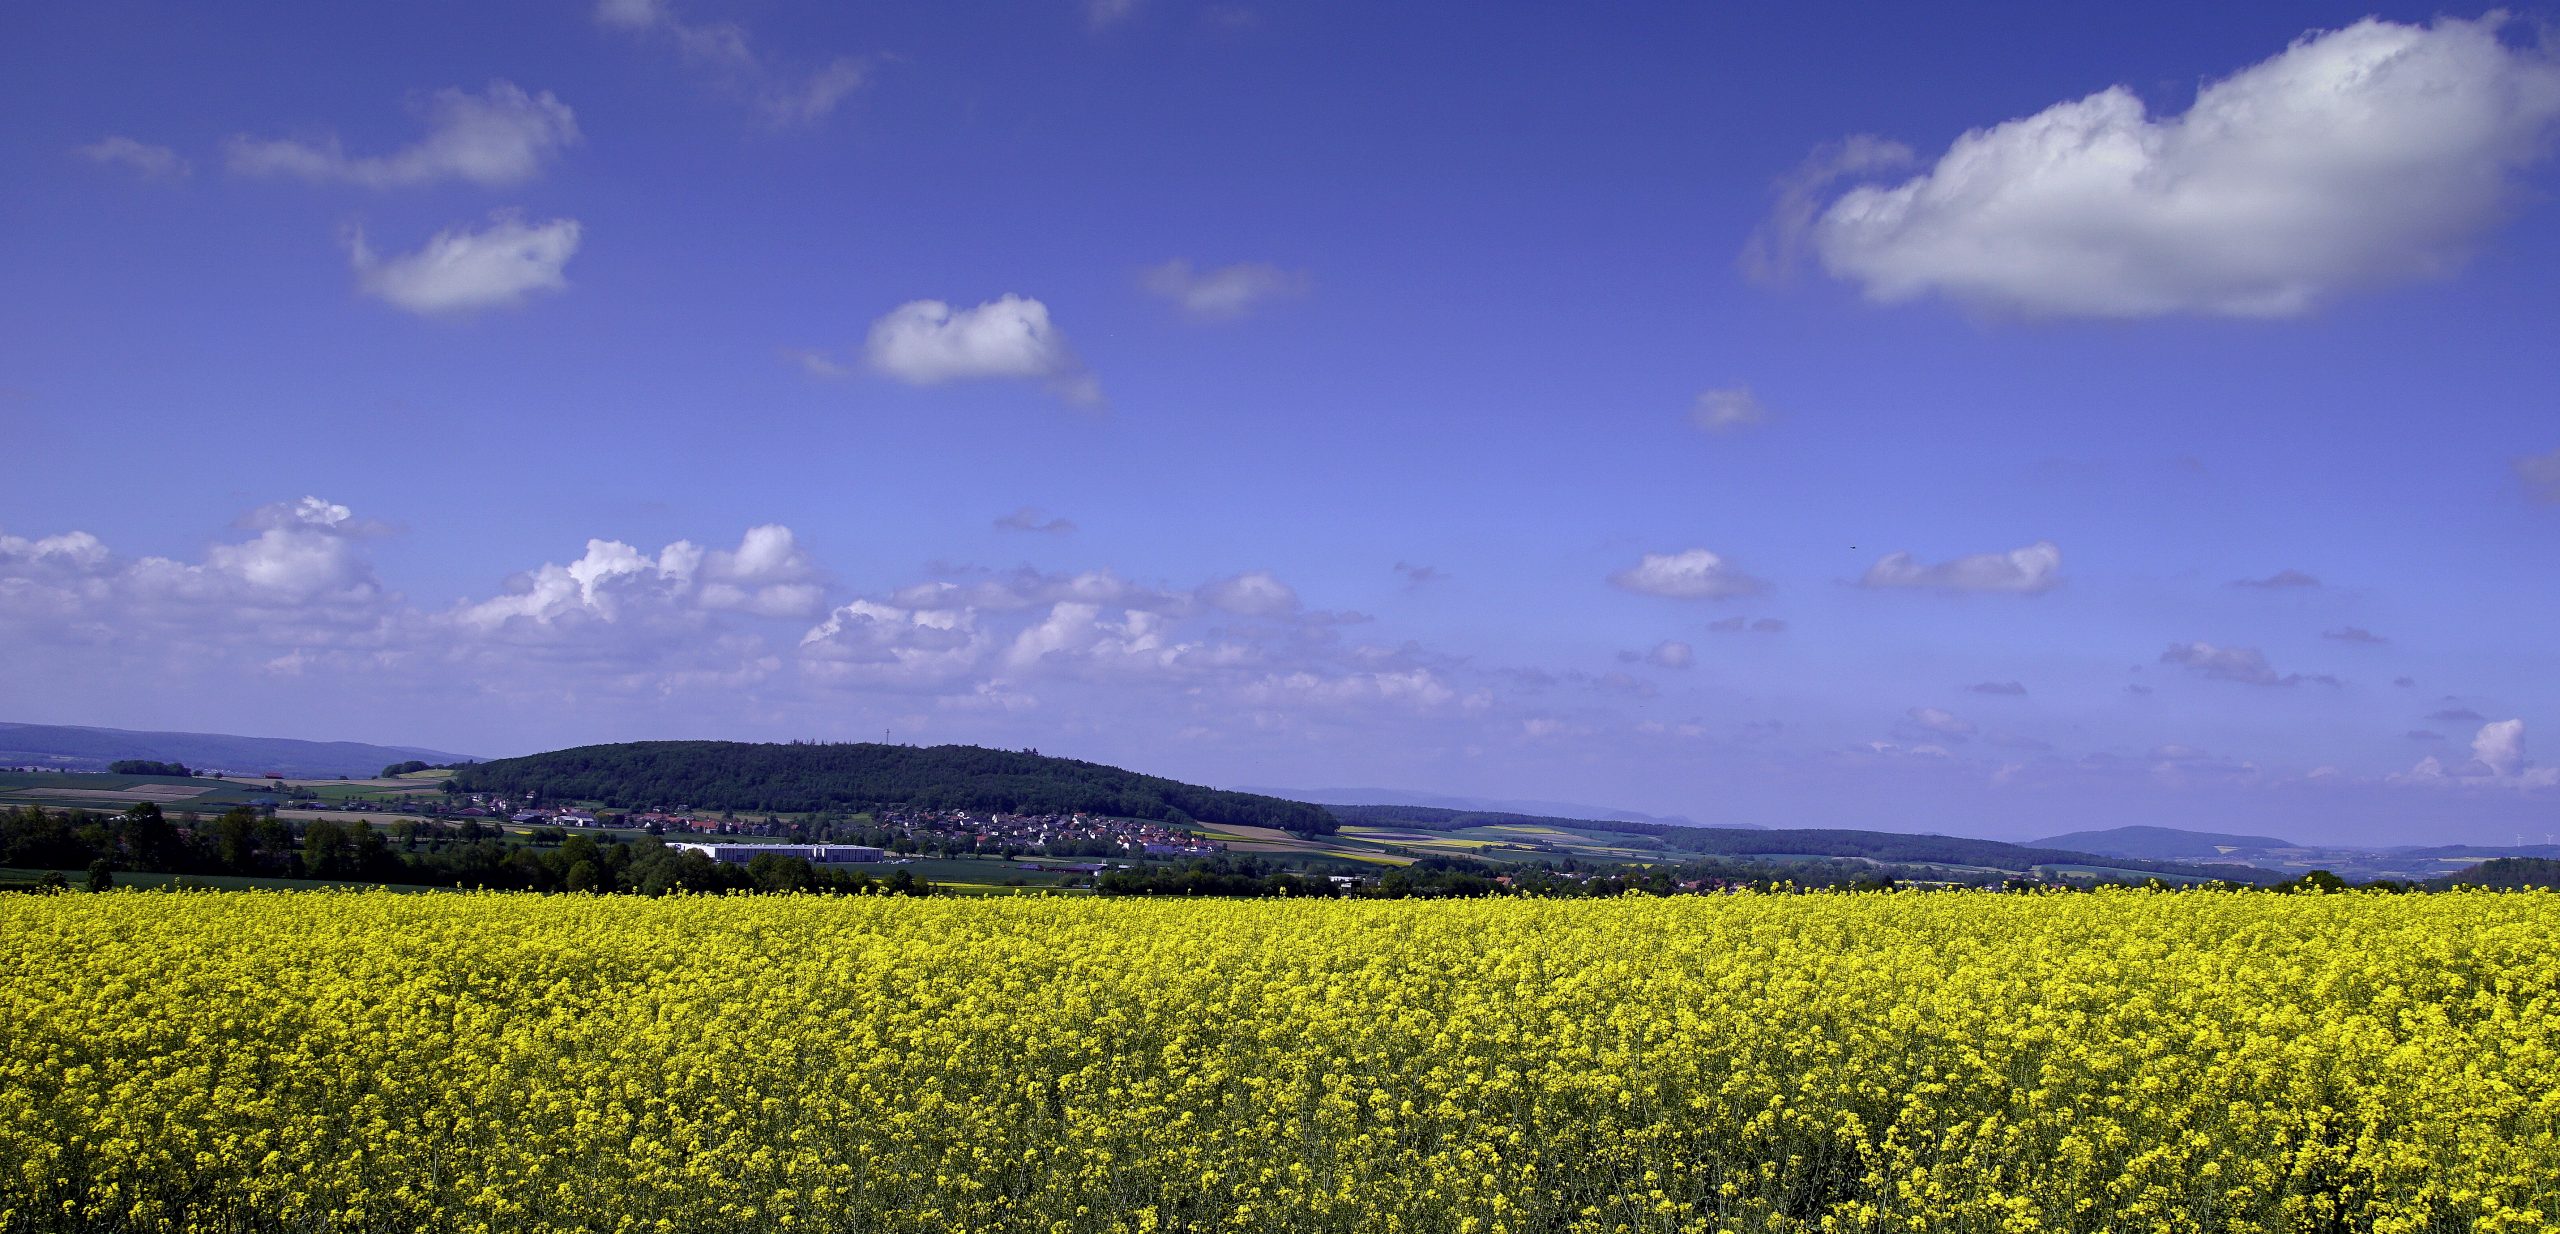 Weitblick vom Spiessturm über gelbe Rapsfelder und grüne Landschaften